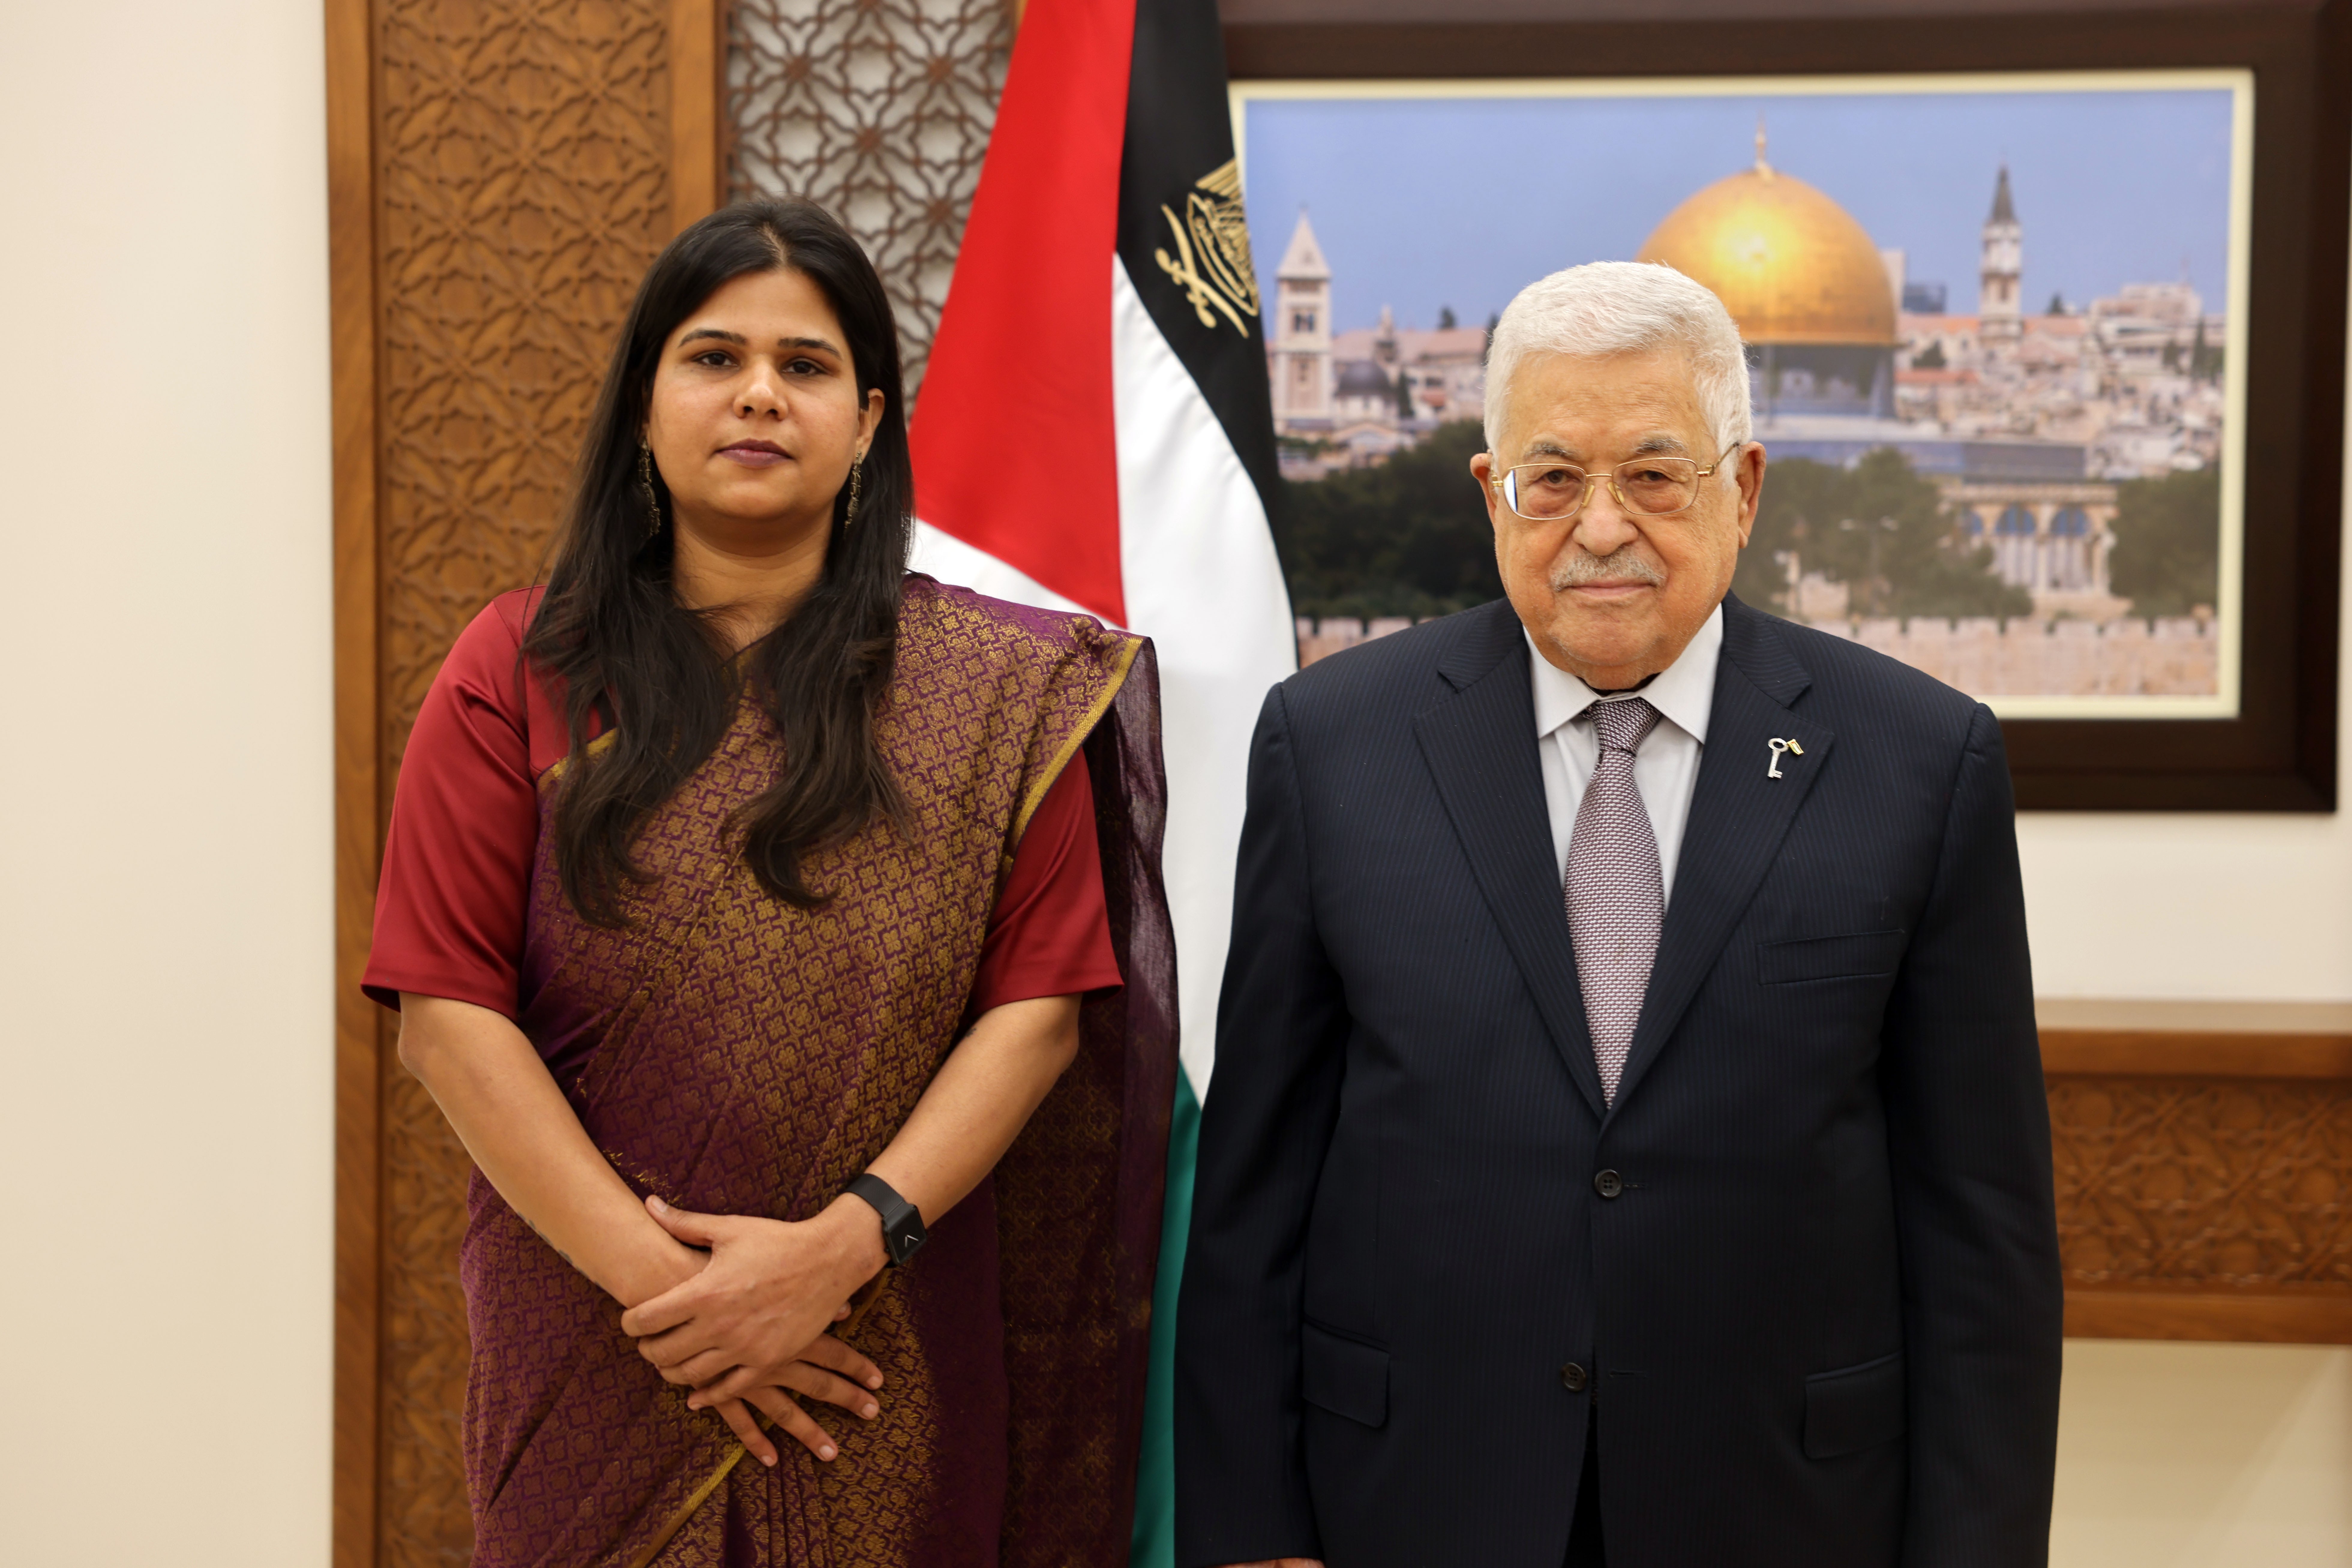 الرئيس يتقبل أوراق اعتماد رئيسة مكتب تمثيل جمهورية الهند لدى فلسطين.jpg